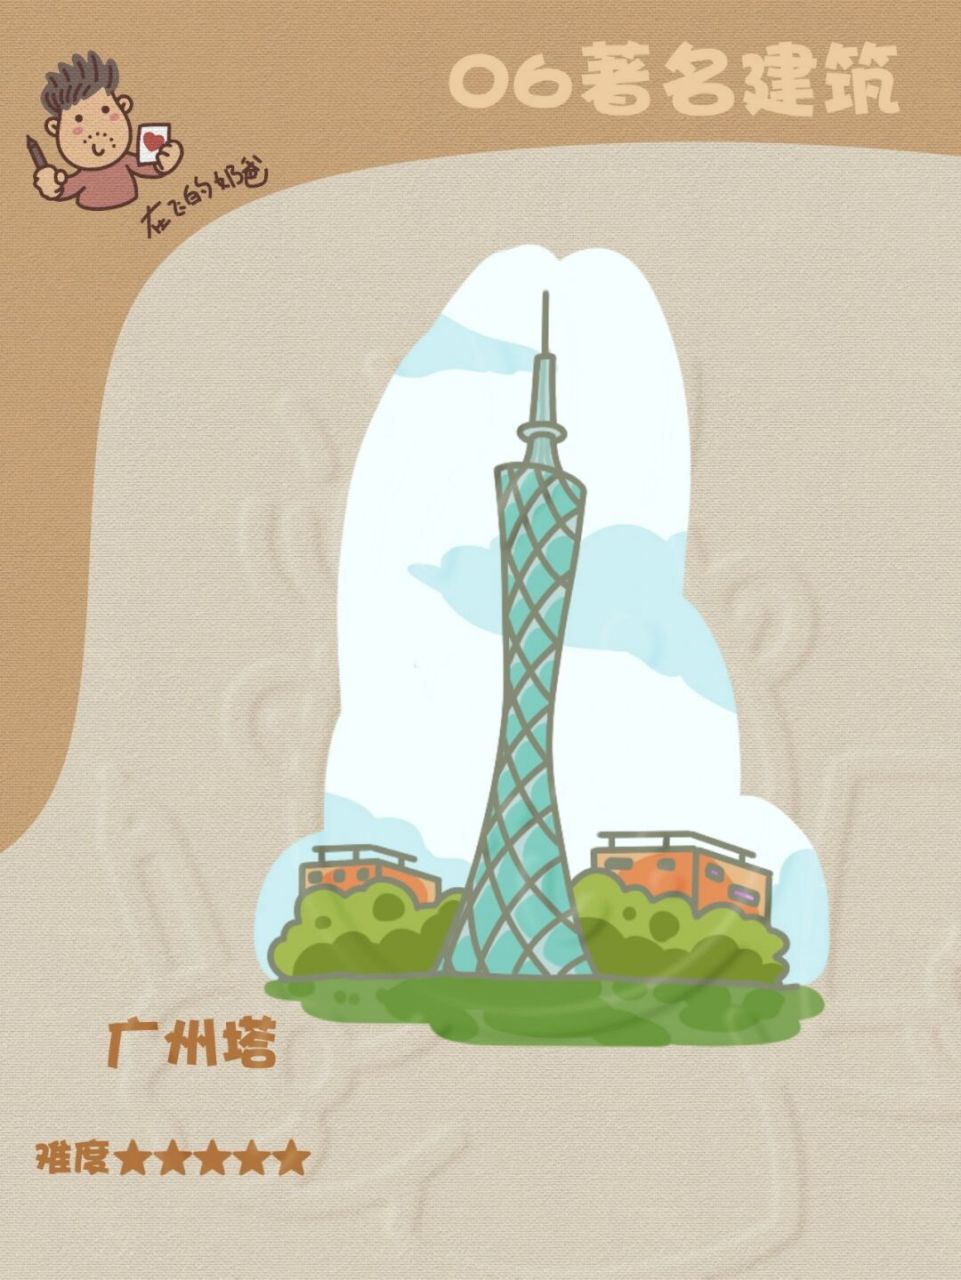 广州塔 简笔画 广州塔(英语:canton tower)又称广州新电视塔,昵称